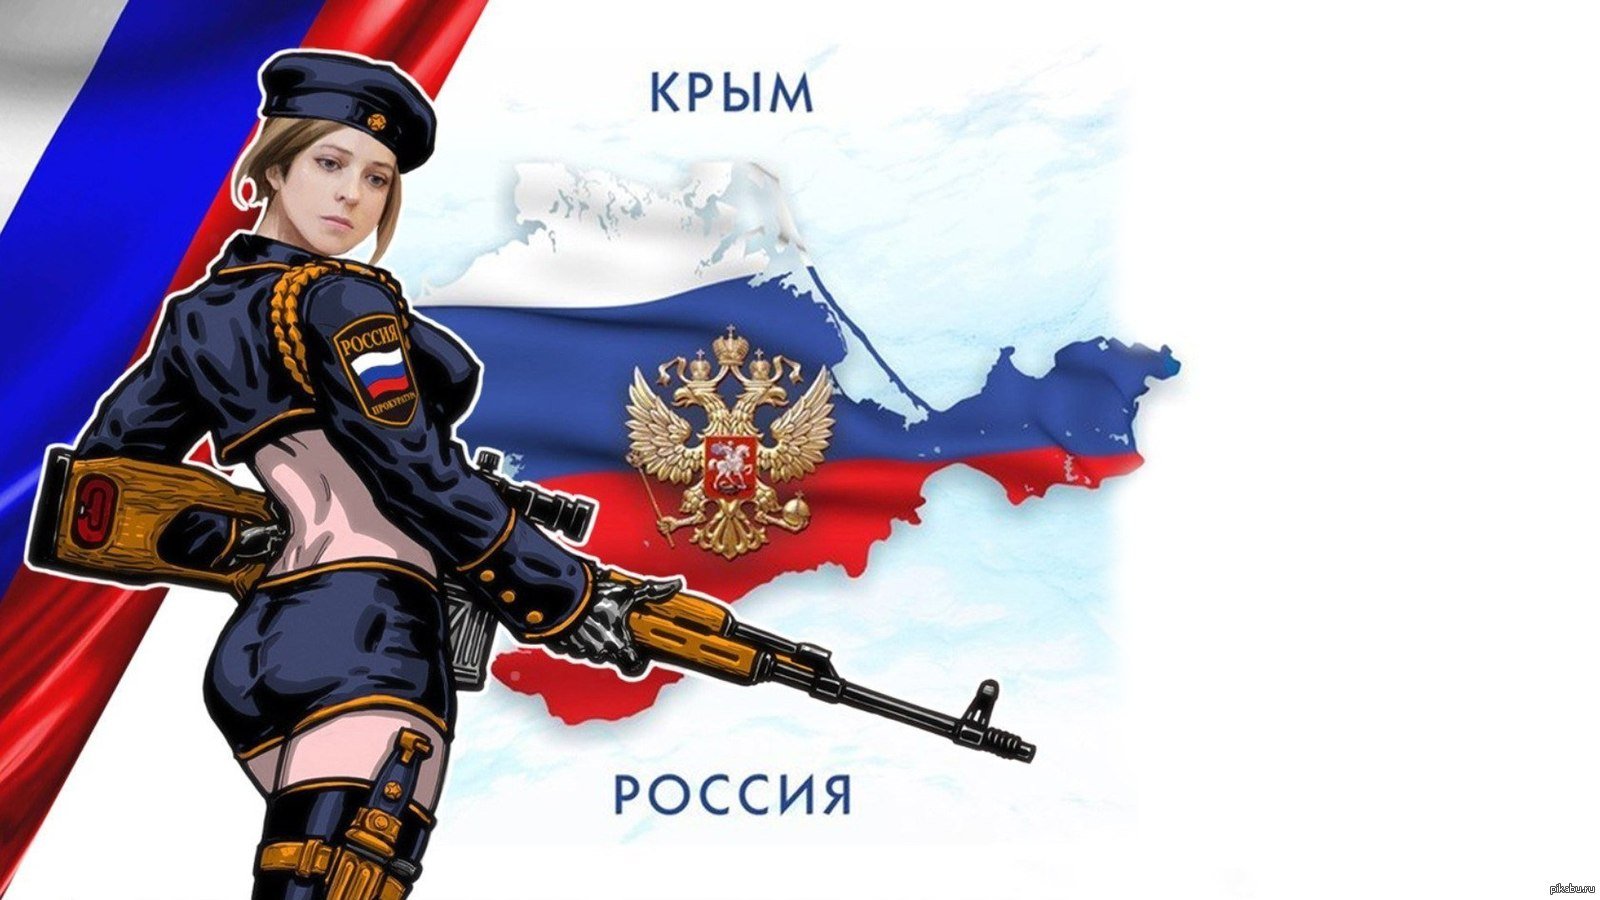 Запрещенное про россию. Персонажи на фоне российского флага. Крым наш девушка.